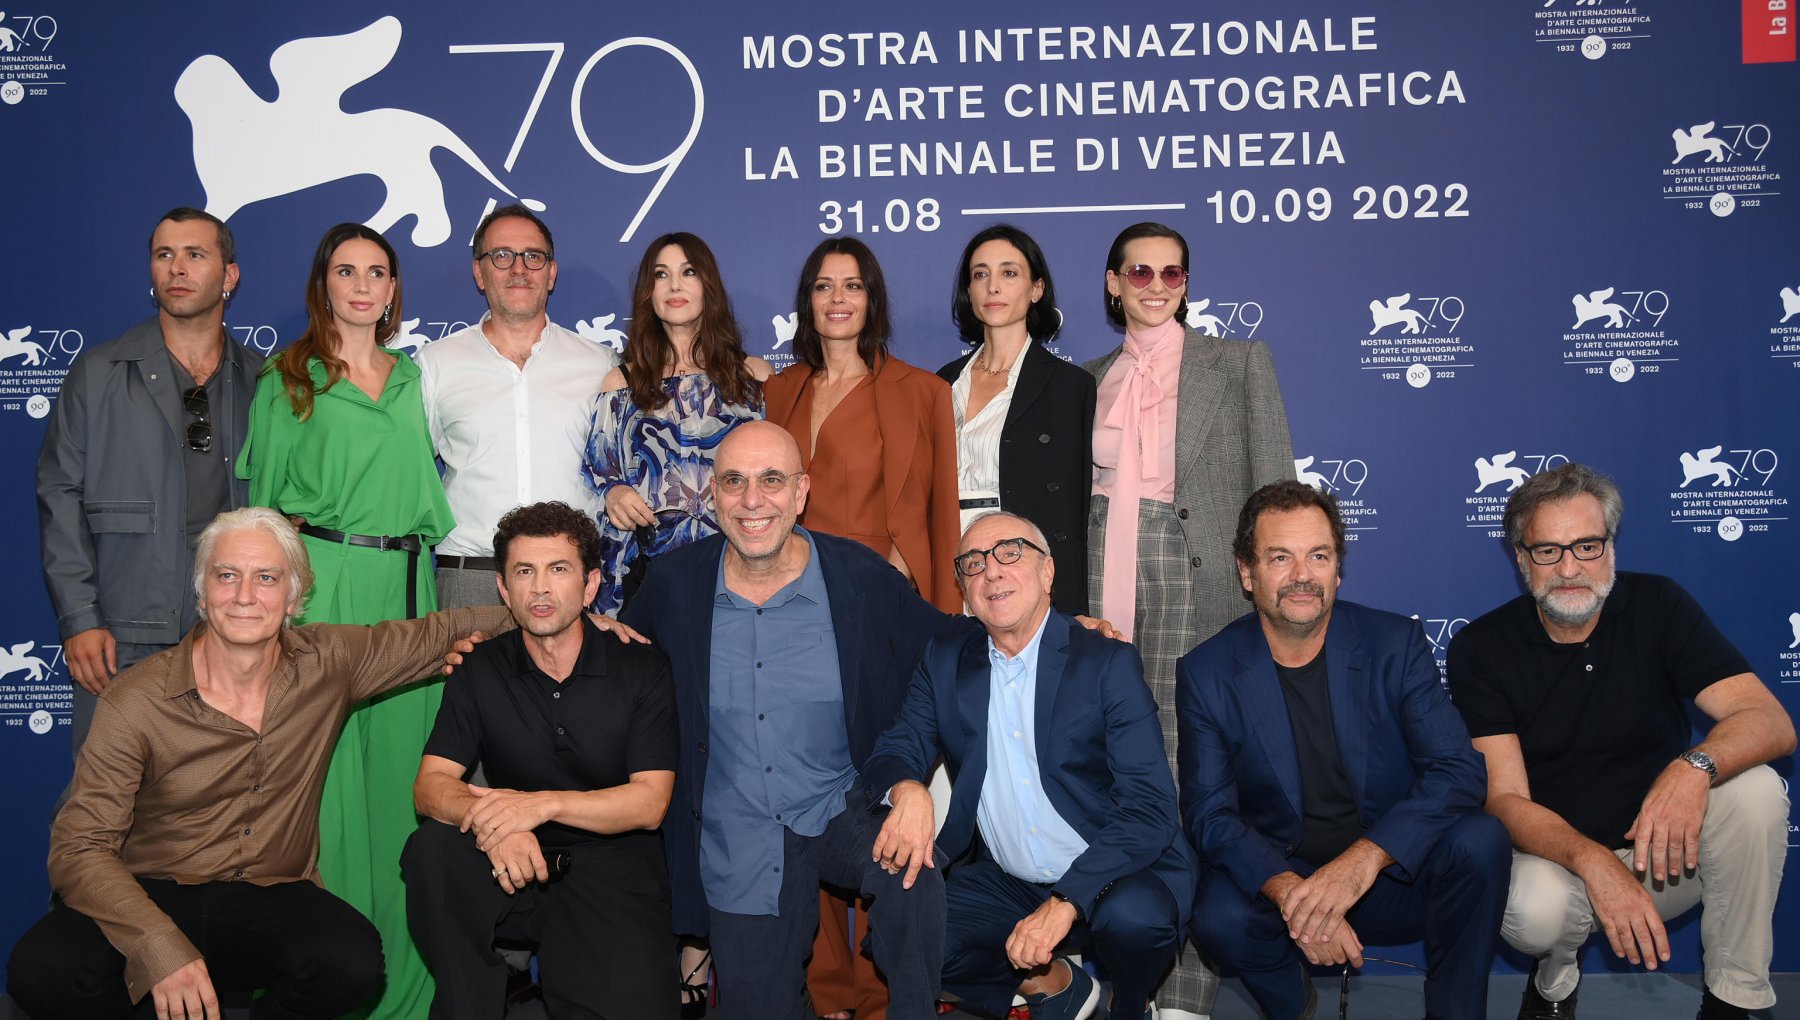 Paolo Virzì a Venezia 79: "Il mio film pazzo tra solitudine e tempi difficili"